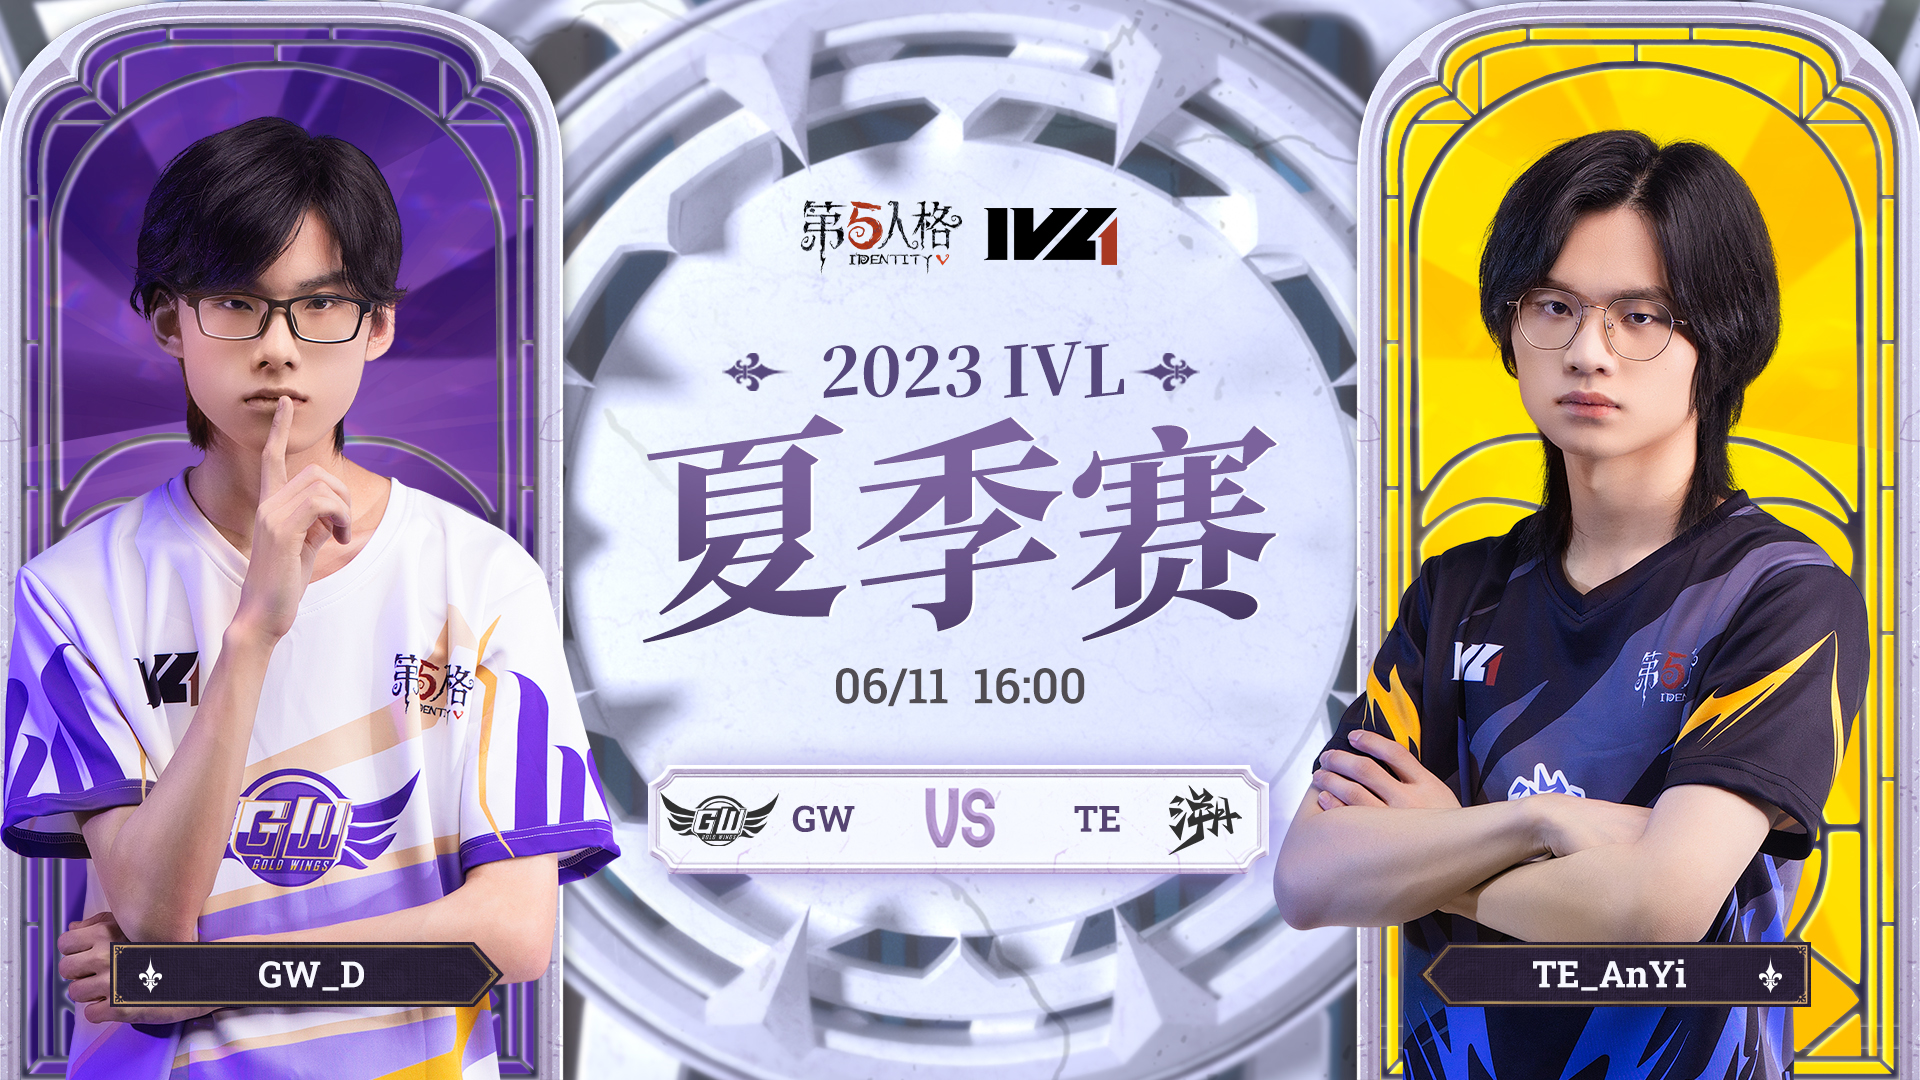 【2023IVL】夏季赛W1D3录像 GW vs TE